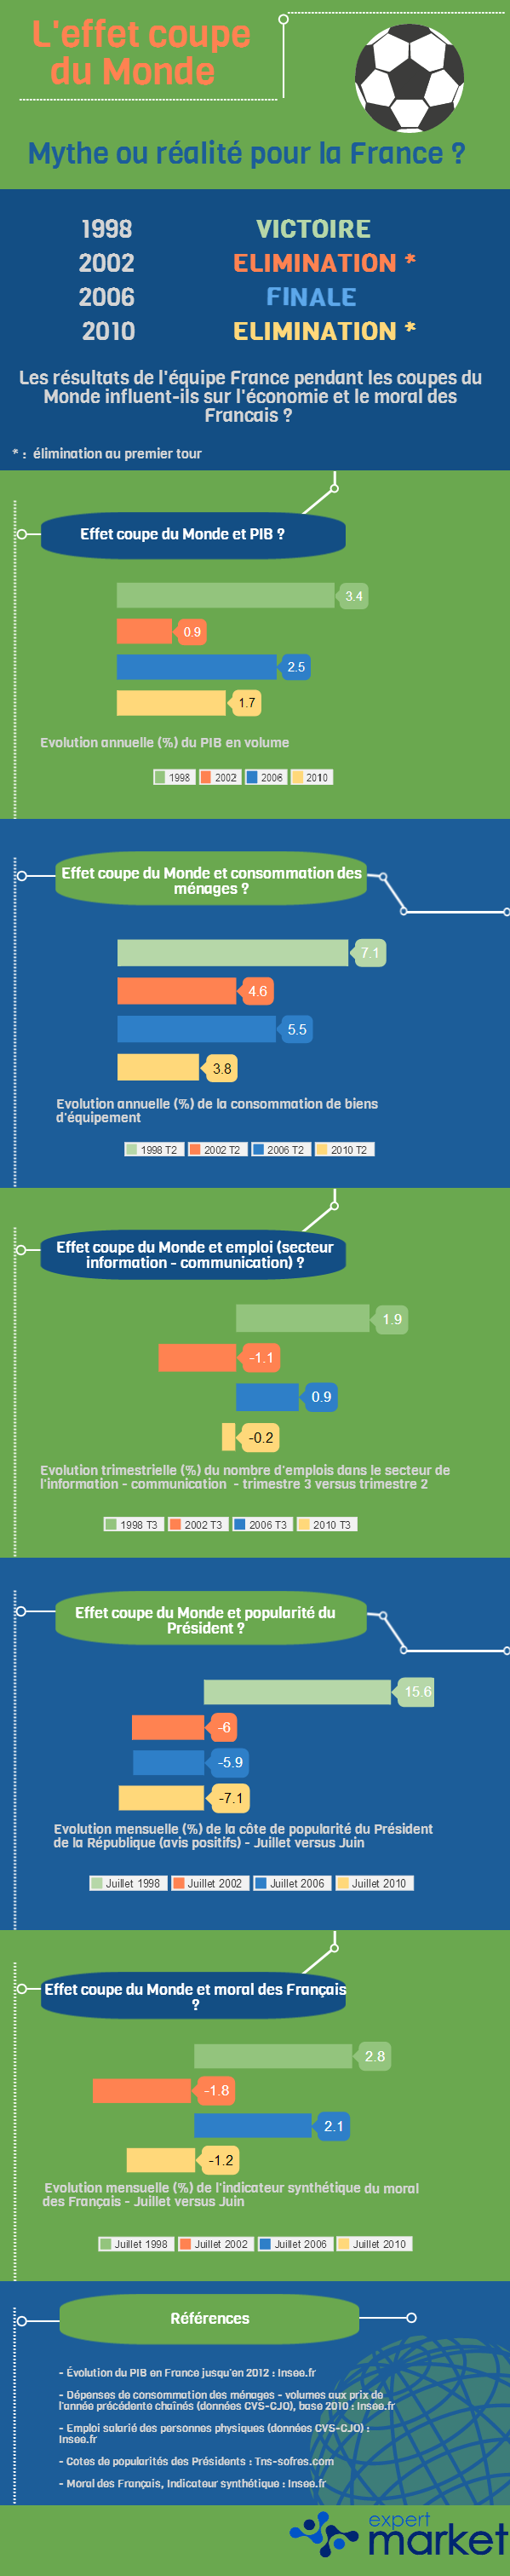 L'effet Coupe du monde, mythe ou réalité pour la France ? - Source : @Expert Market